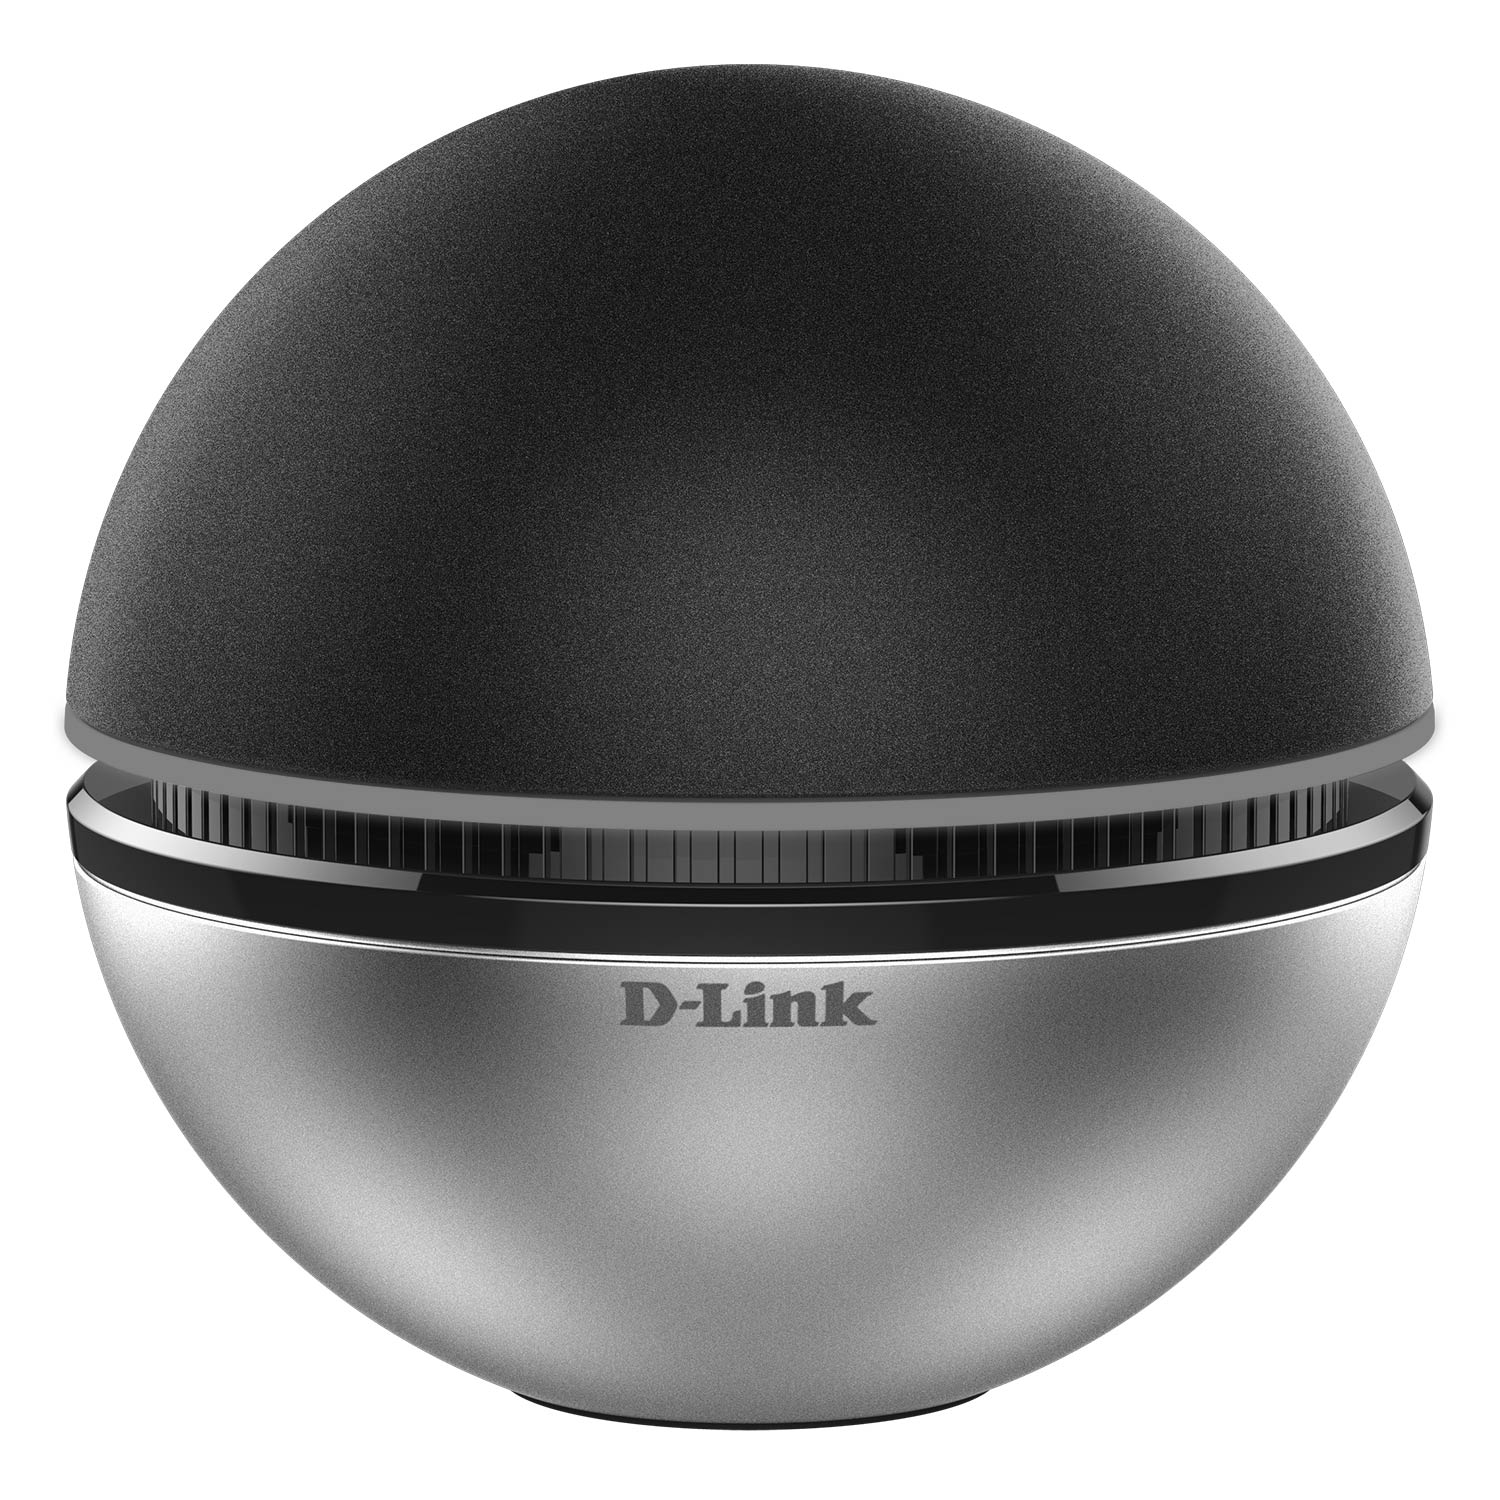 D-Link DWA-192 - USB Wifi Băng Tầng Kép - Hàng Chính Hãng